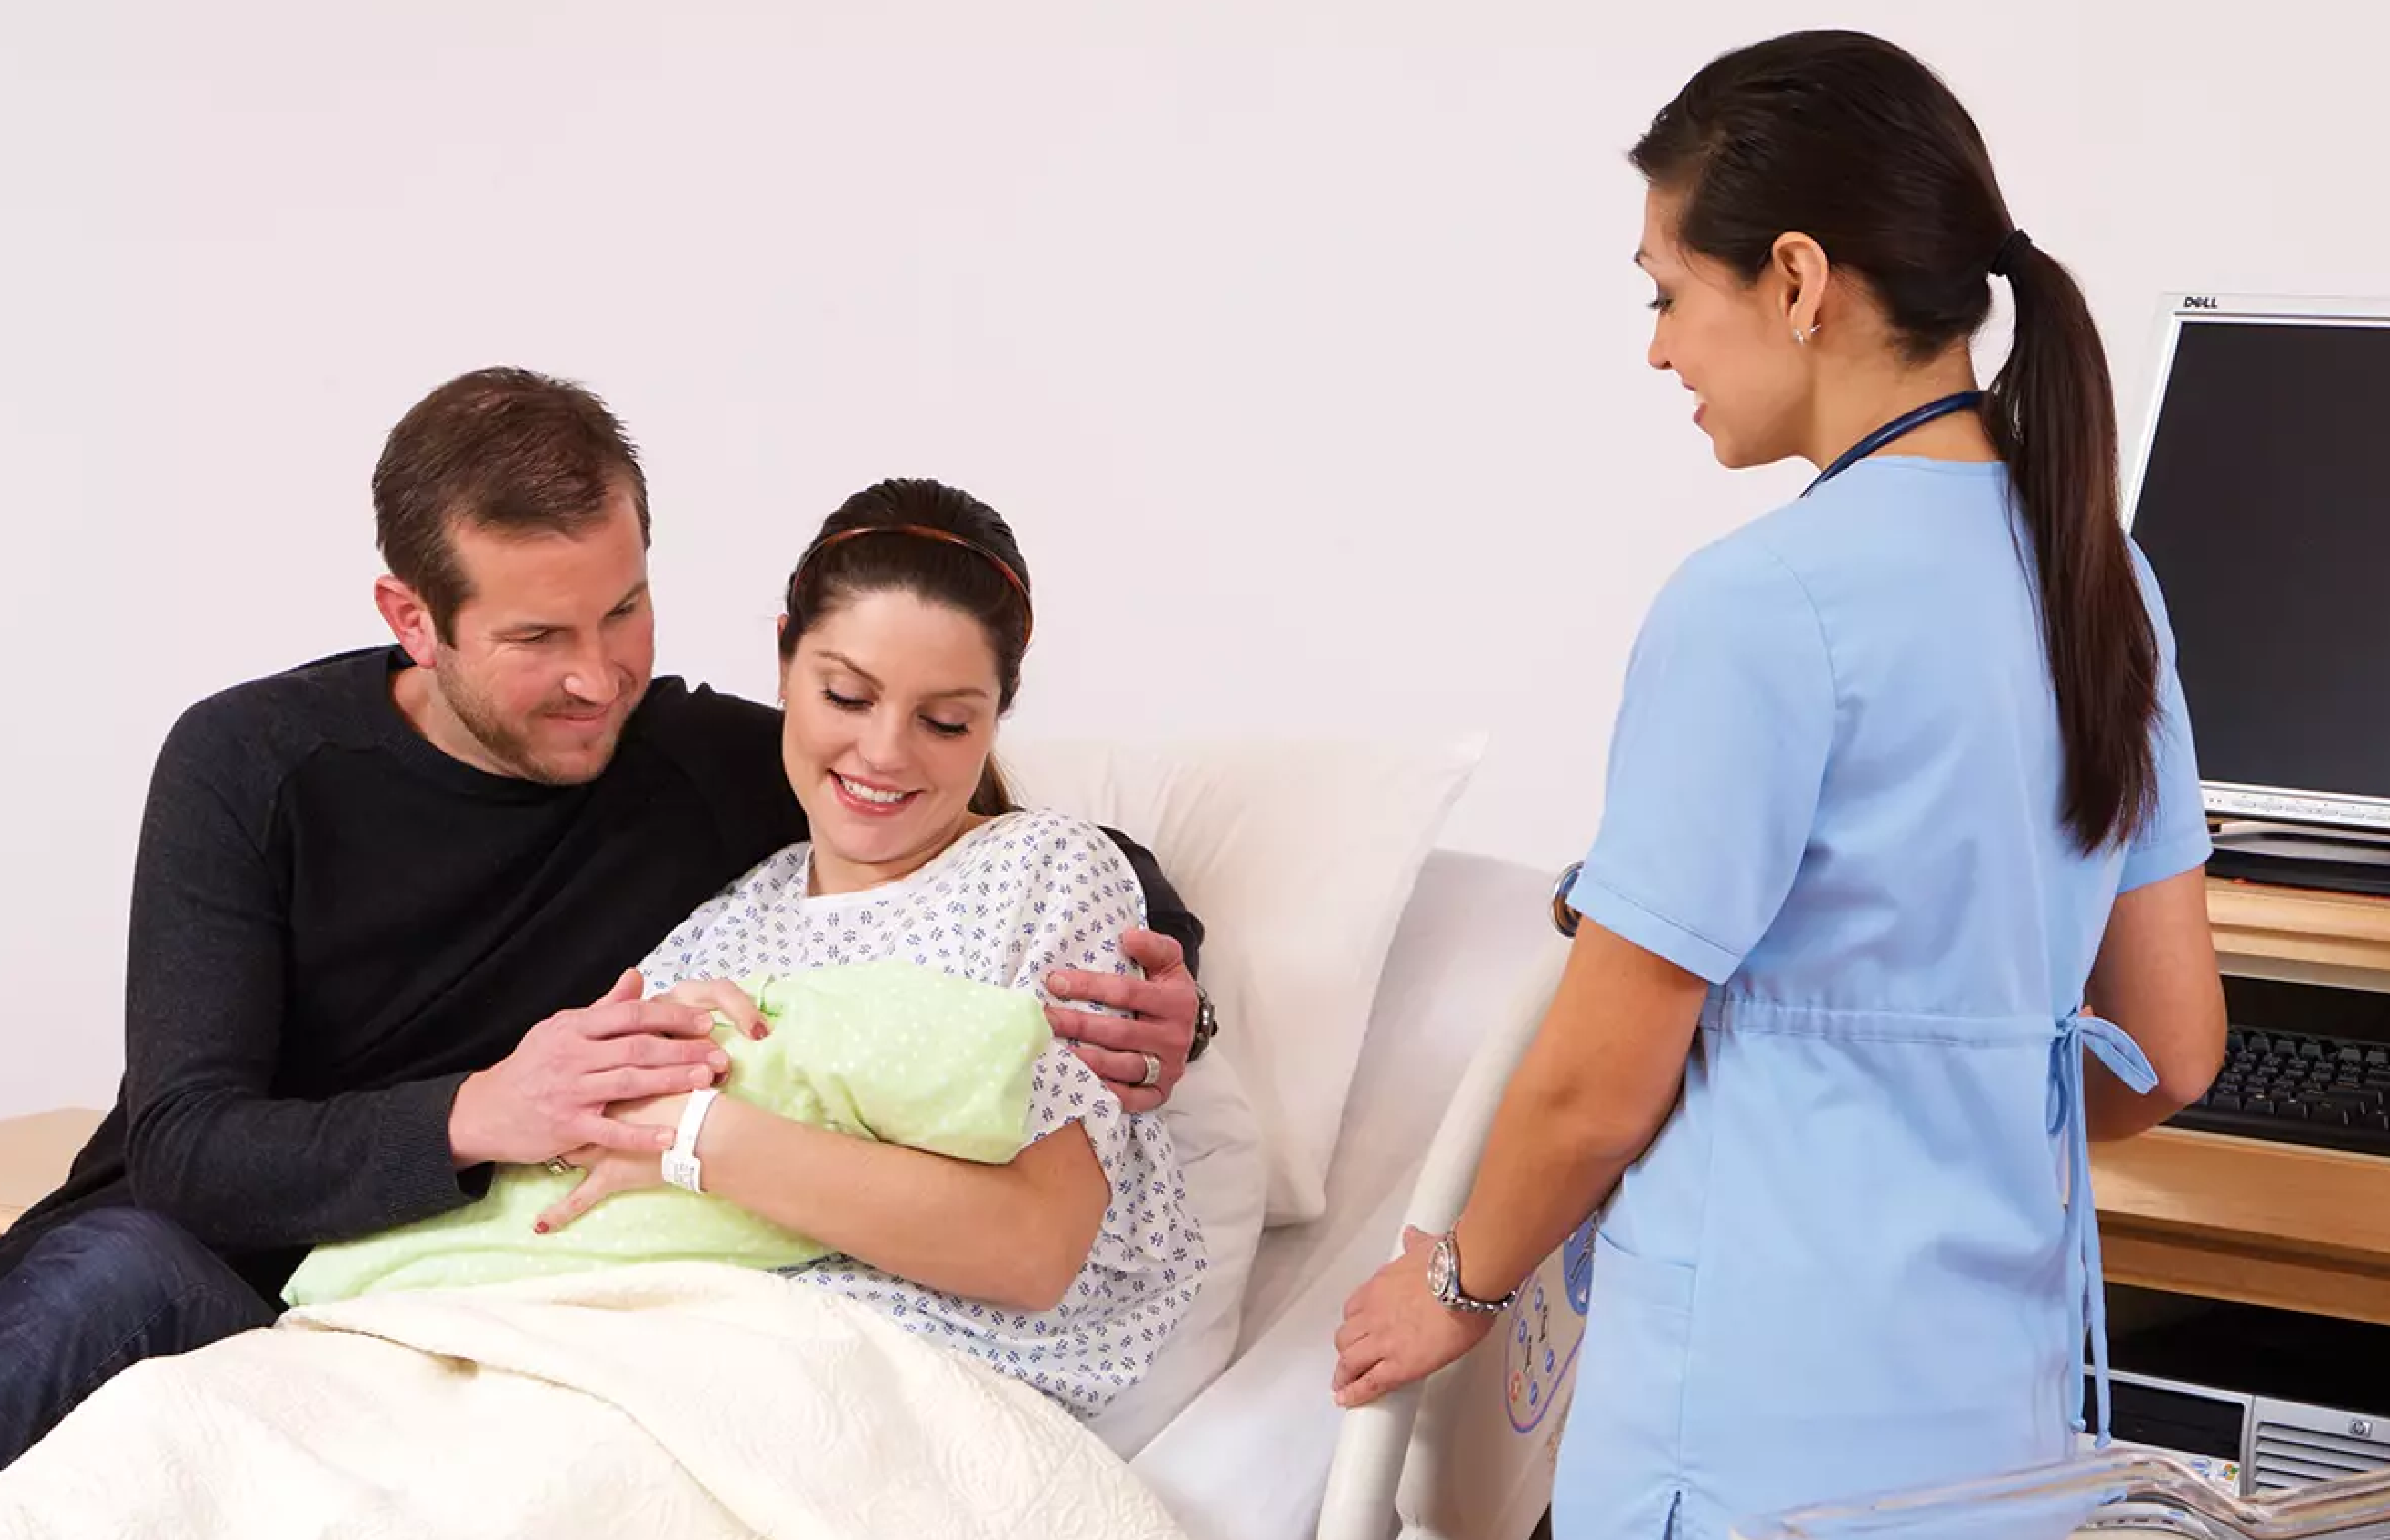 La cama de parto: un dispositivo médico para la seguridad y comodidad de las madres y el personal de salud